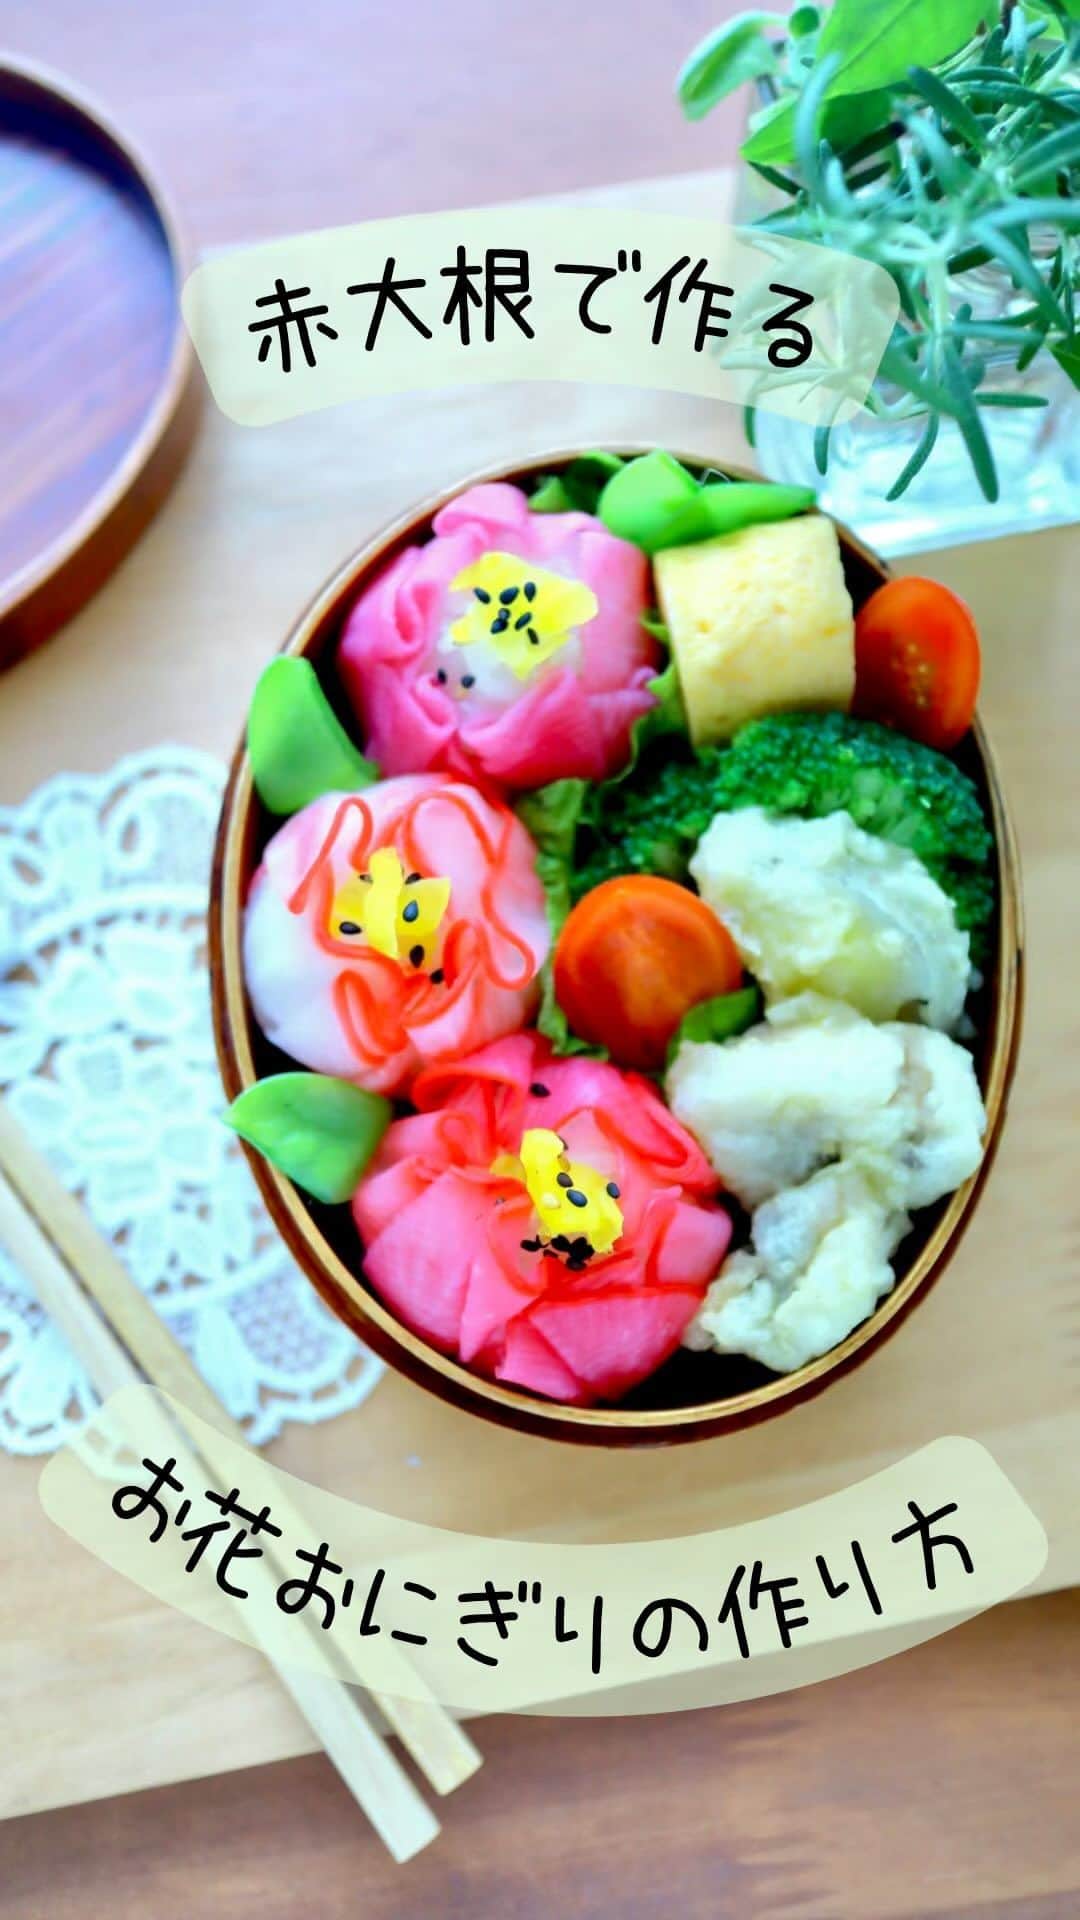 maki ogawaのインスタグラム：「赤大根で作るお花おにぎりの作り方です。  普通の大根＋梅酢→ピンク 赤大根＋すし酢→縁赤、中心白 赤大根＋梅酢→濃いピンク  梅酢がとても濃いので 漬け込む時間は10分程度に。  塩おにぎりを真ん中にしましたが すし飯でもOKです。  #お花おにぎり #寿司べんとう  #寿司弁当 #おにぎり #おにぎり弁当  #riceball #onigiriaction #onigiri #おむすび  #キャラ弁 #kyaraben #kyarabenist #decoben #obento #bento #bentoexpo #小川真樹」